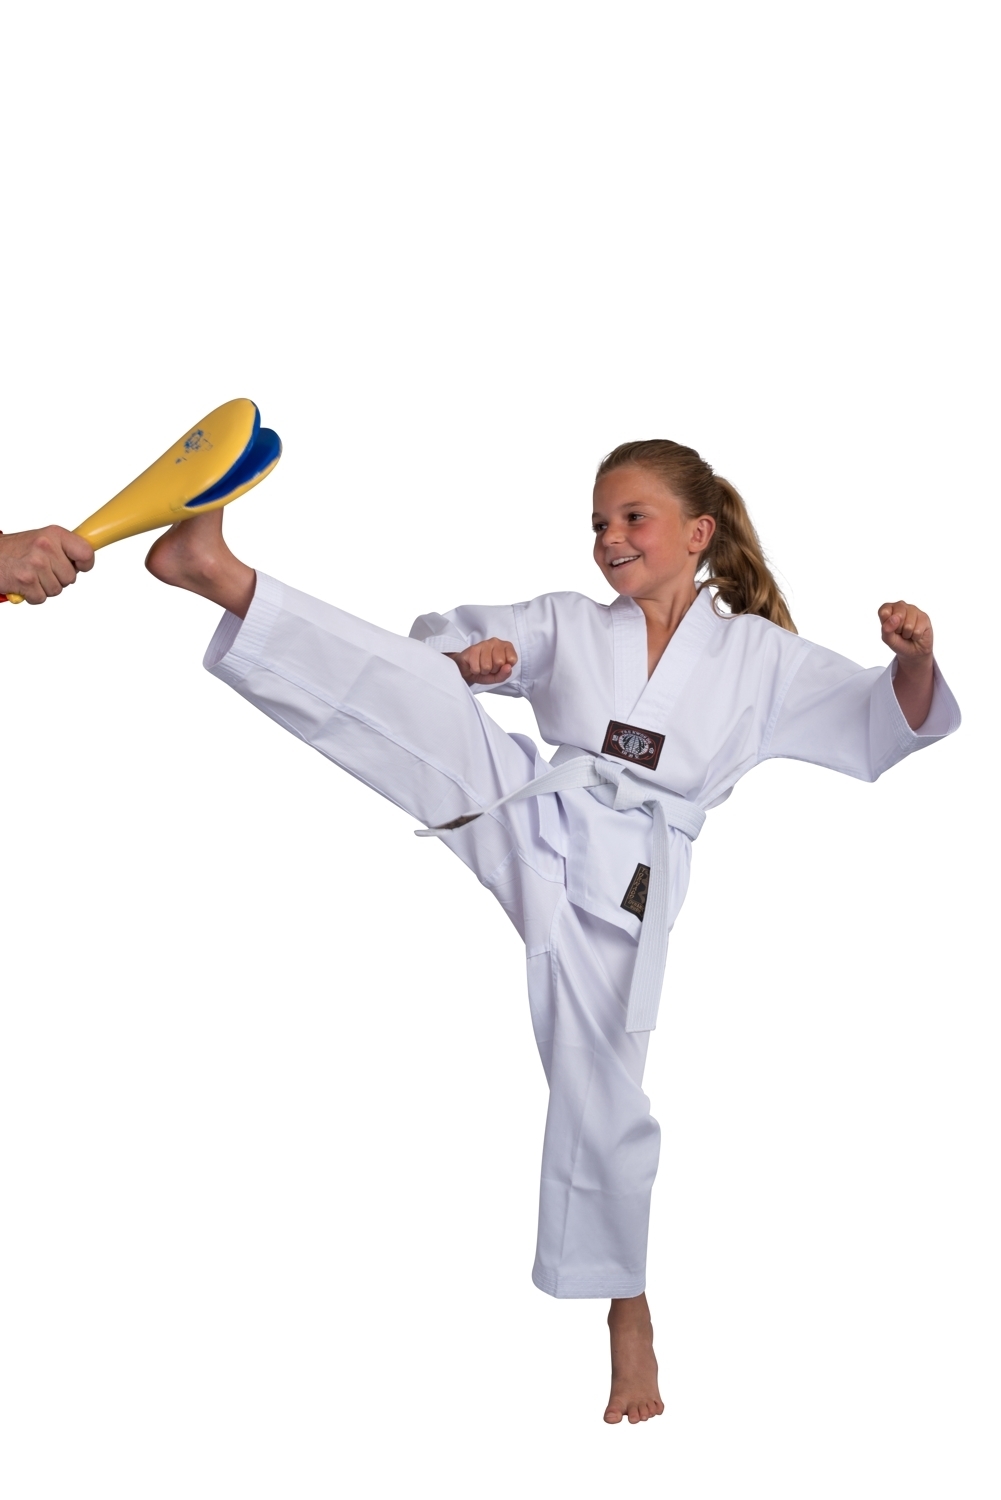 NUR für 15€ Taekwondo 75% Reduziert!! Tae Kwon Do Anzug 